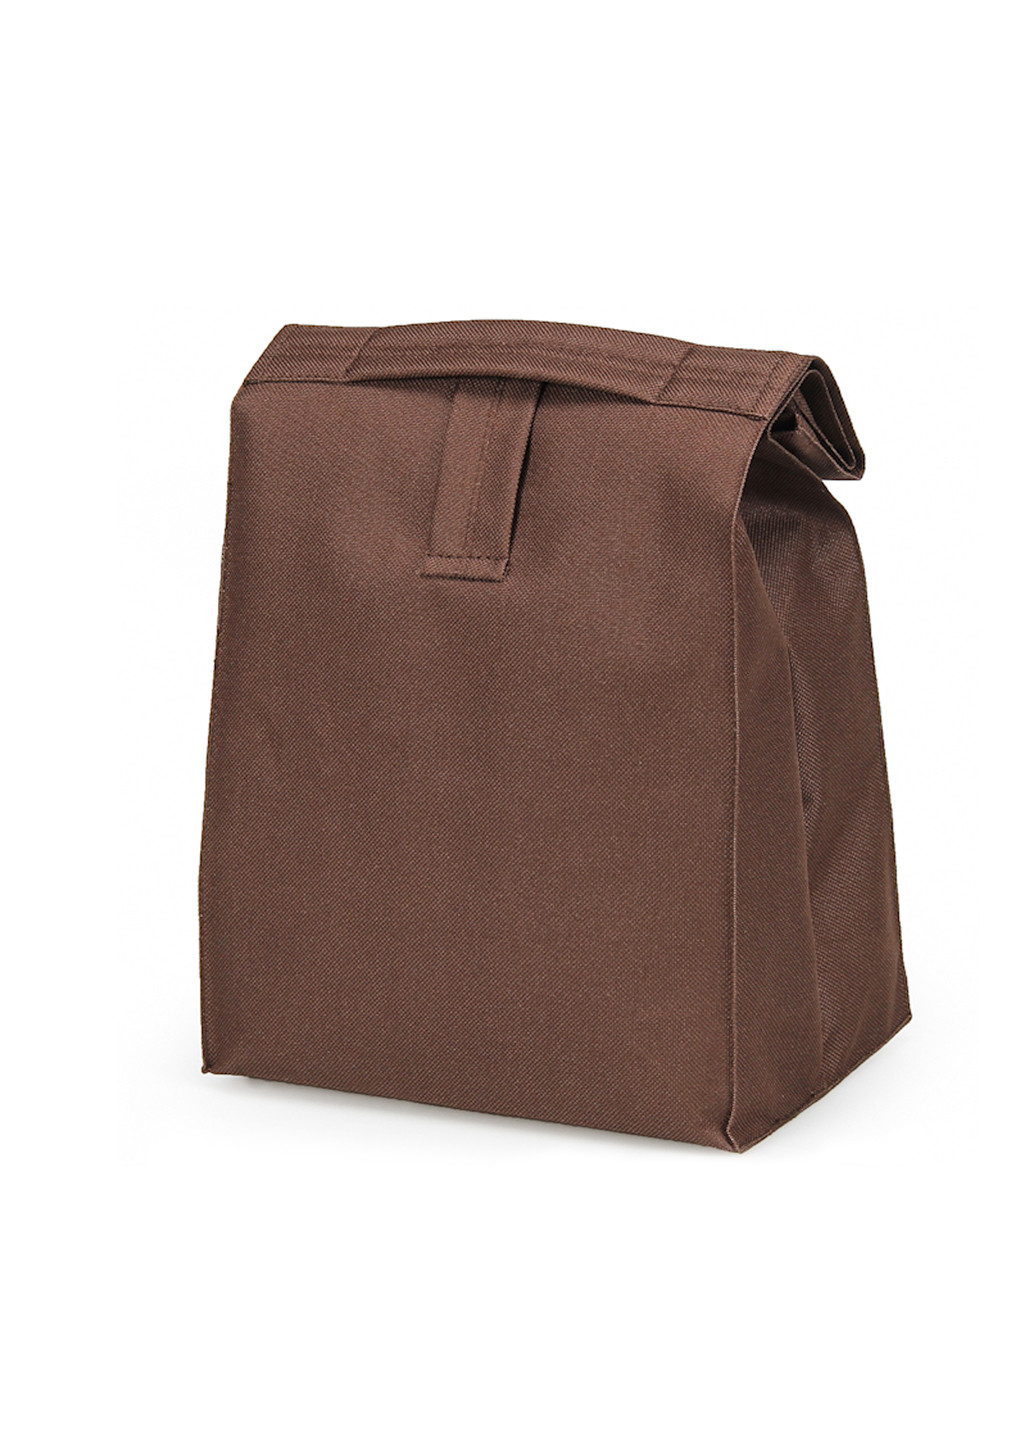 Термосумка ланч бэг М коричневая Lunch bag UA m (232265110)